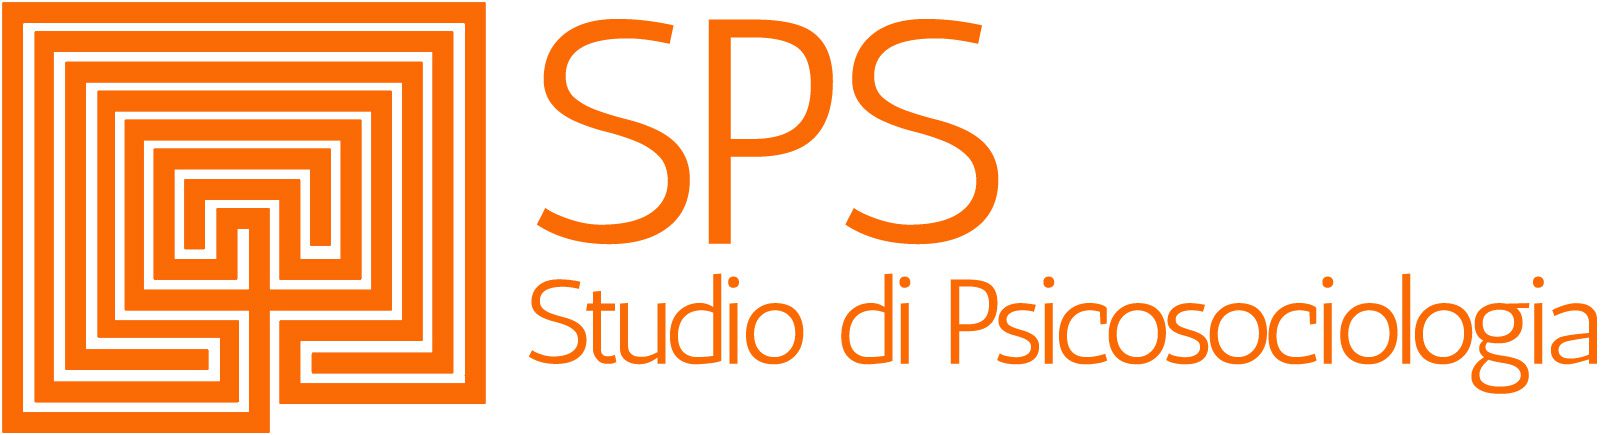 SPS Studio di Psicosociologia